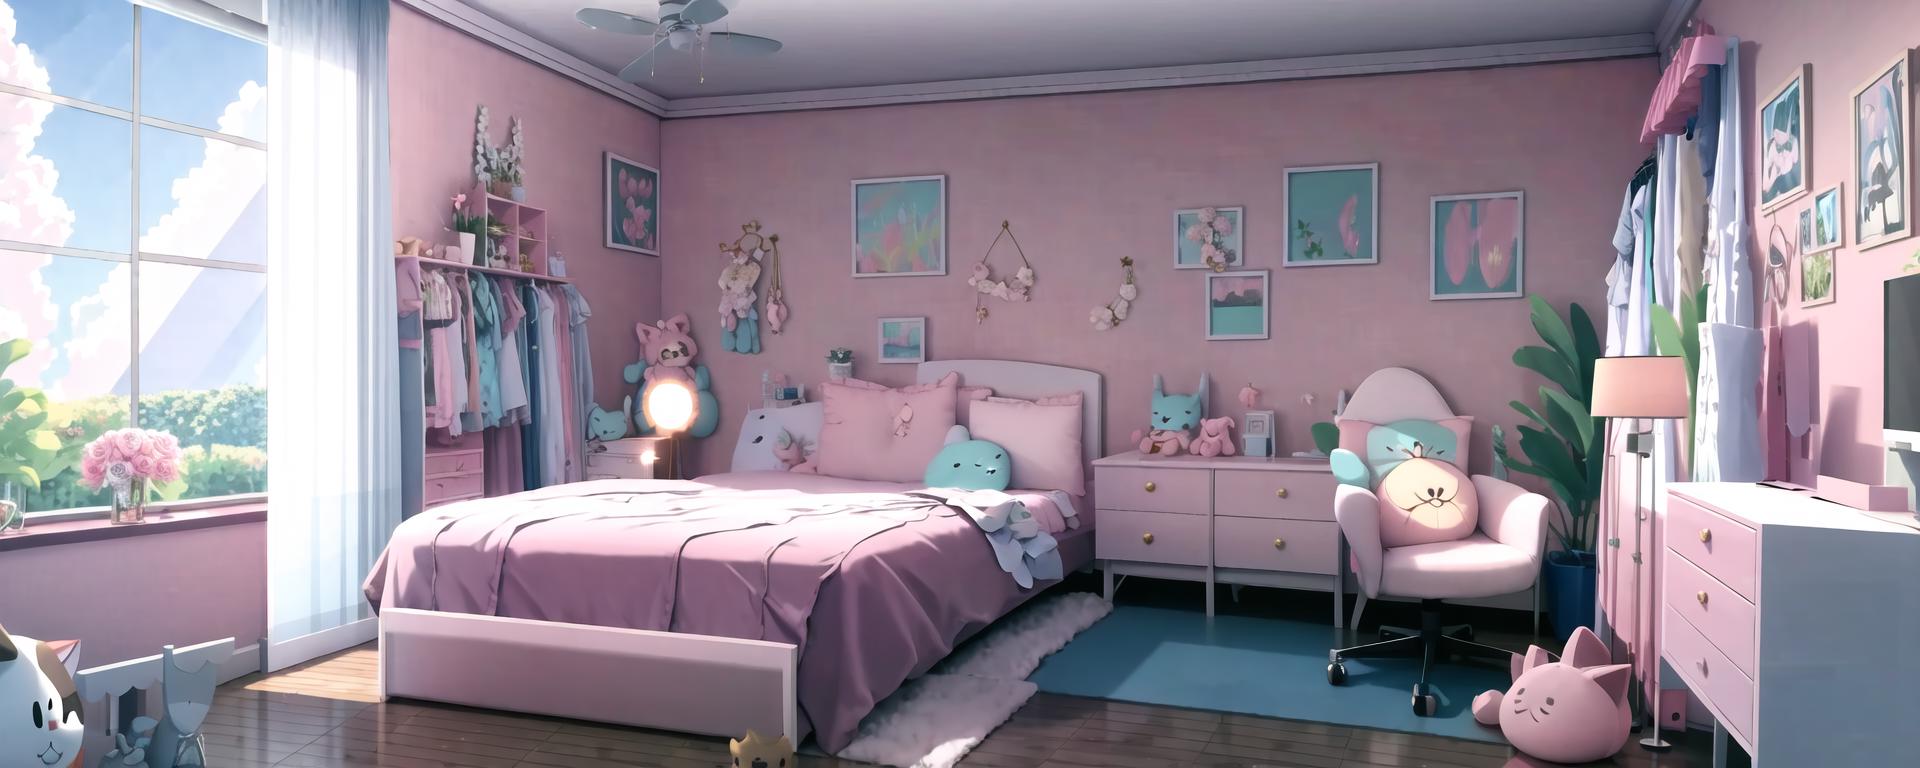 Anime Bedroom 4 by F3lchocobo on DeviantArt-demhanvico.com.vn